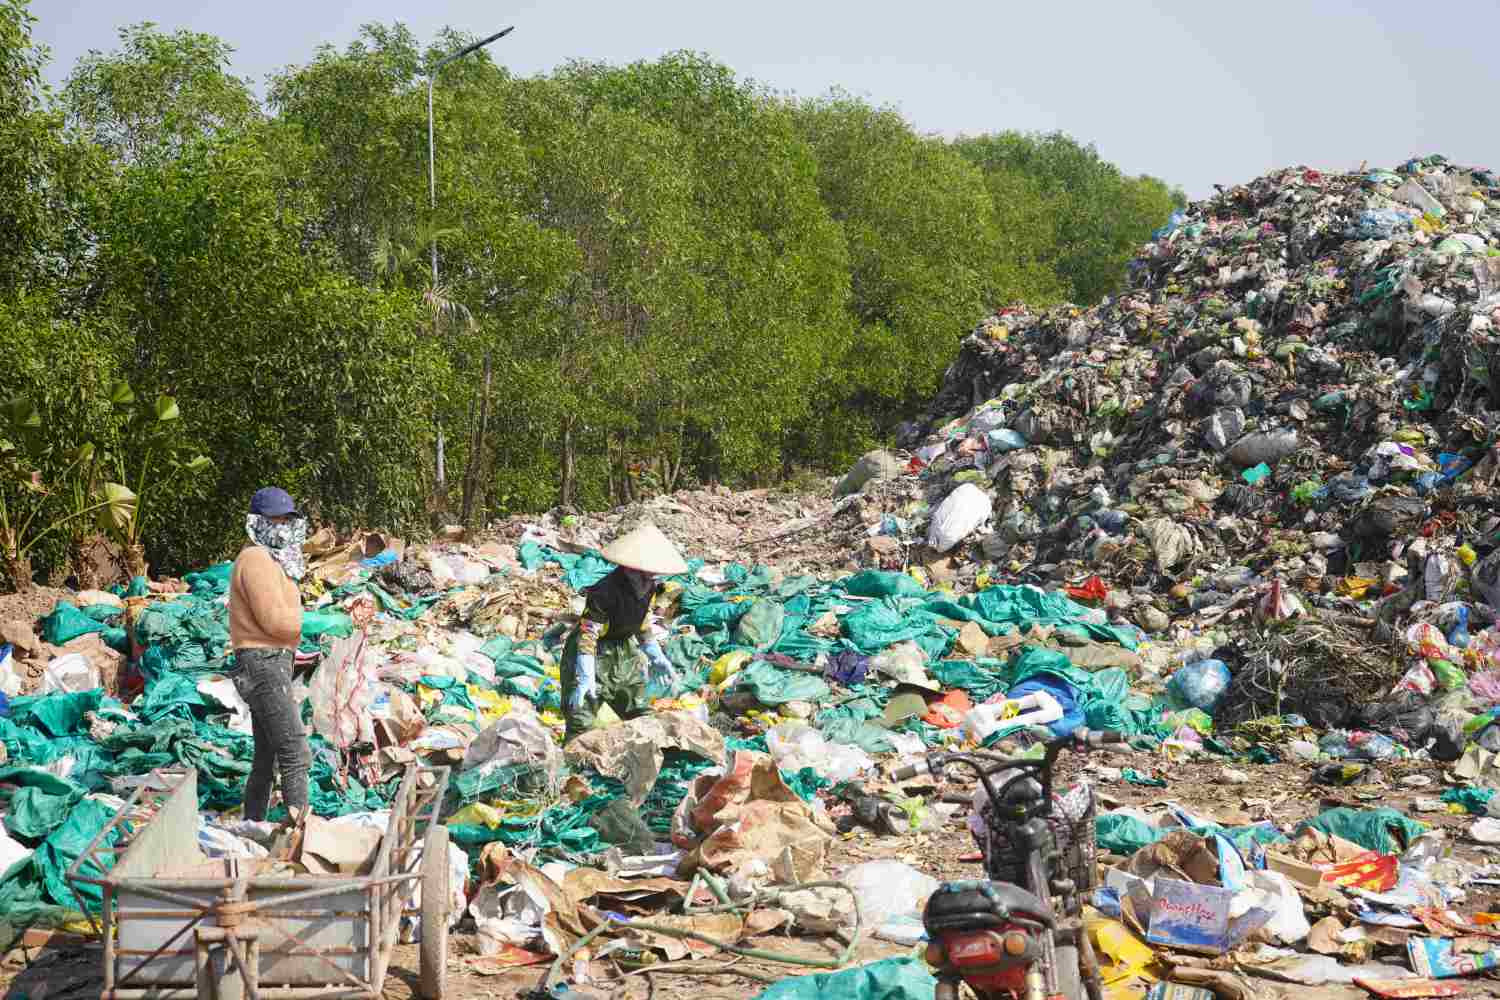 Bãi rác thuộc Nhà máy xử lý rác thải Công ty Cổ phần Thương mại du lịch Thành Vinh nằm trên tuyến đê giáp sông Thái Bình, thuộc địa bàn thôn Bắc Phong, xã Kiến Thiết. 